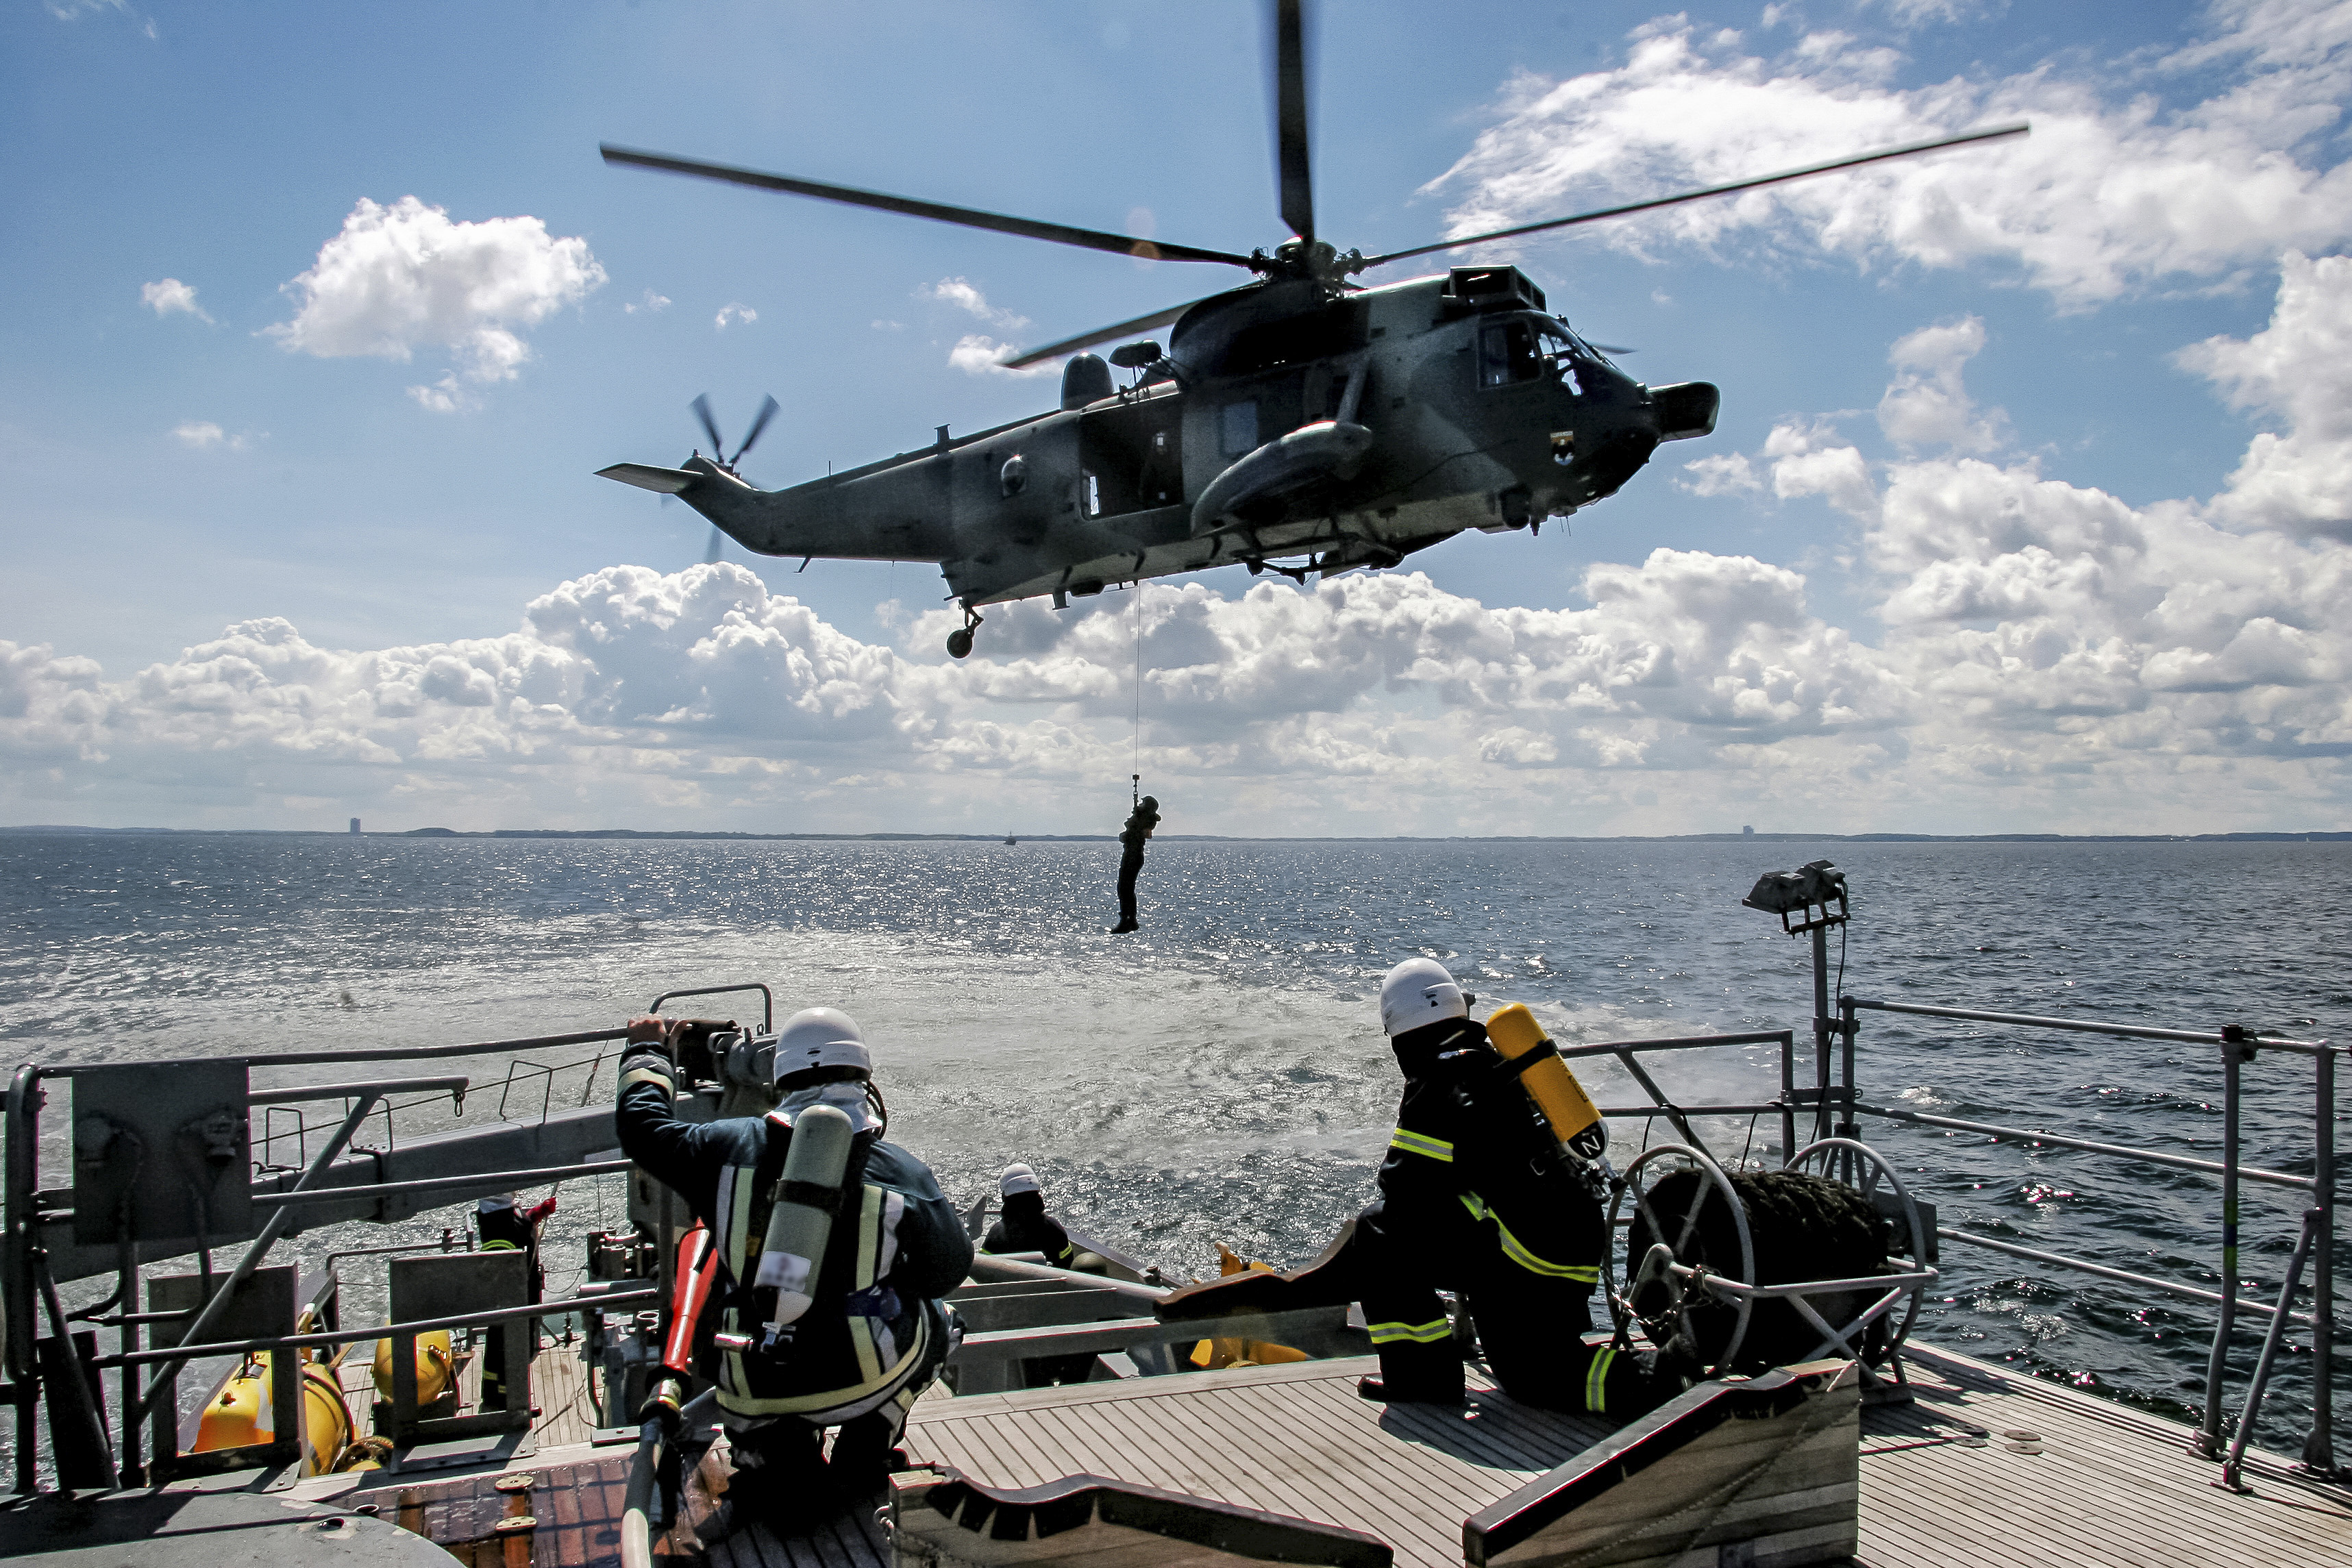 Спасательная миссия. Спасательный вертолет и судно. Спасательные операции на море. Операции с вертолетом на судне.